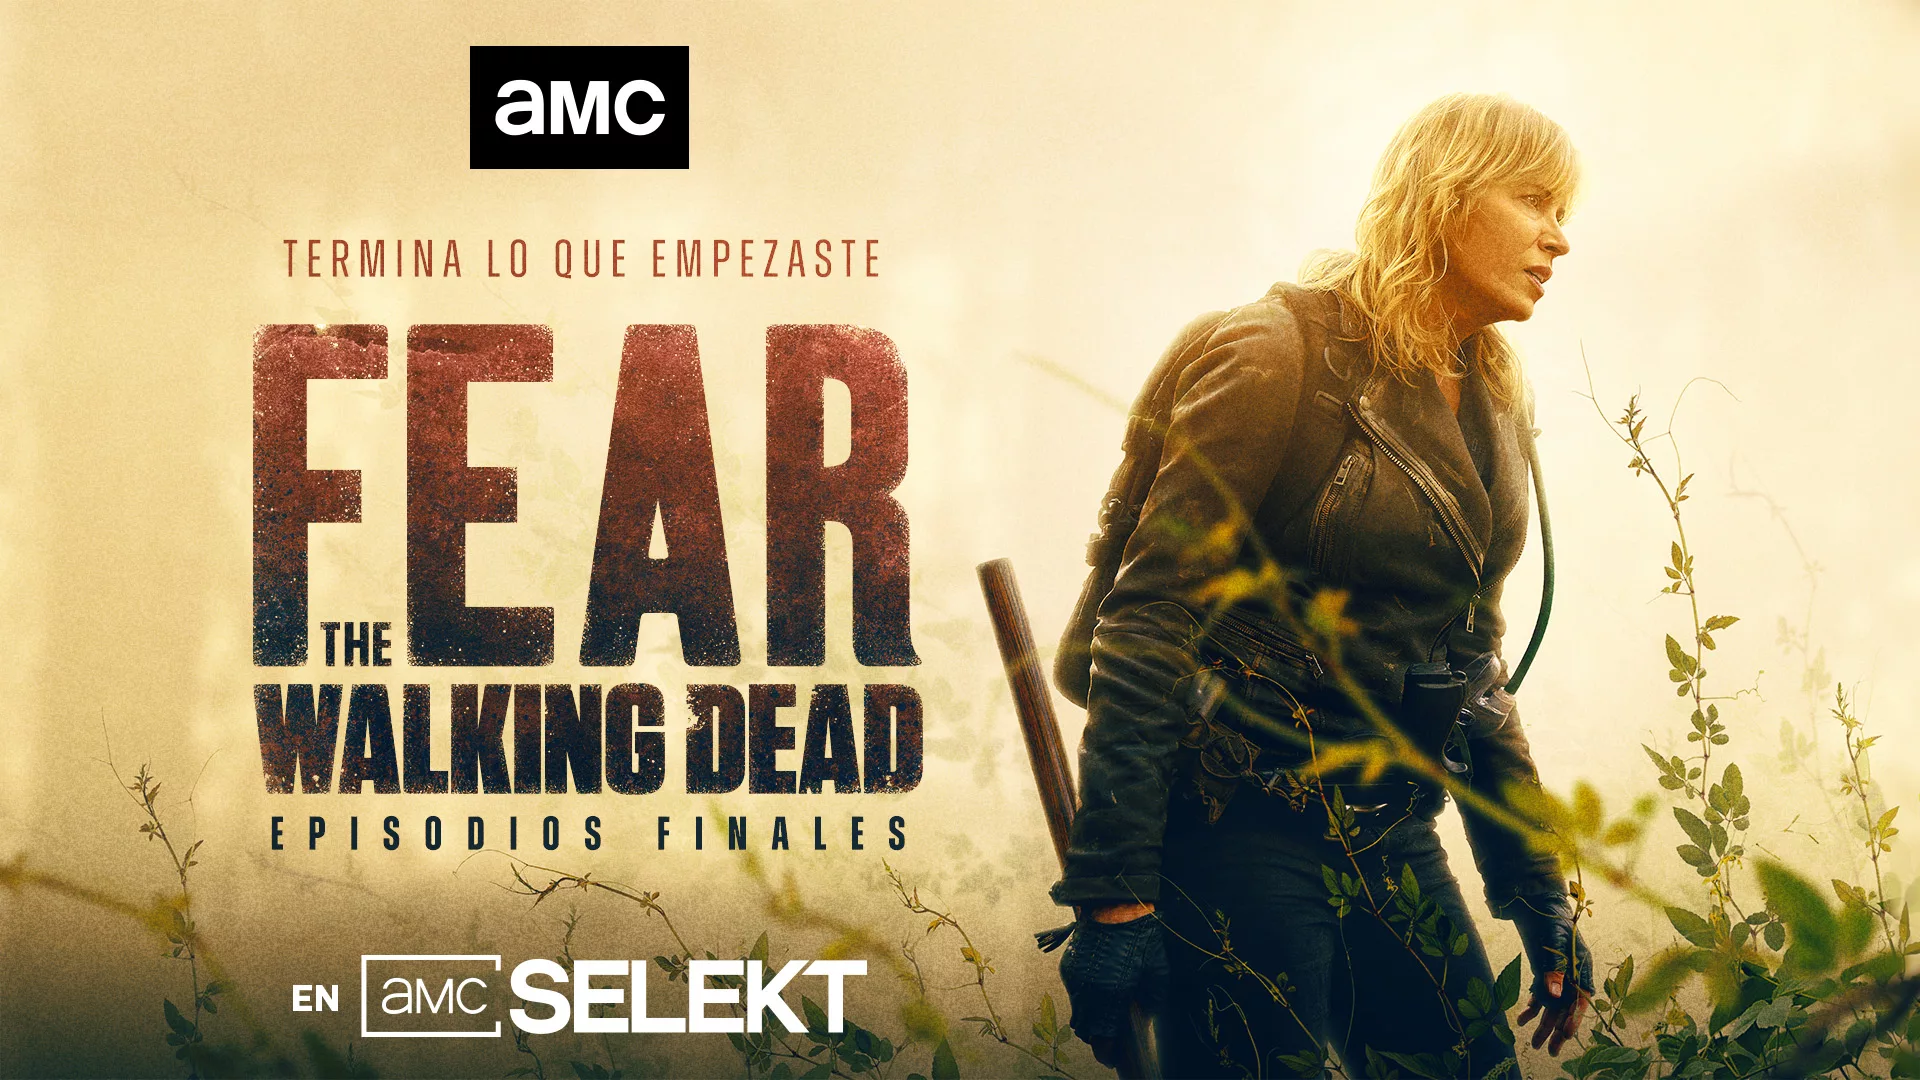 AMC lanza el tráiler y póster oficial de los episodios finales de Fear the Walking Dead